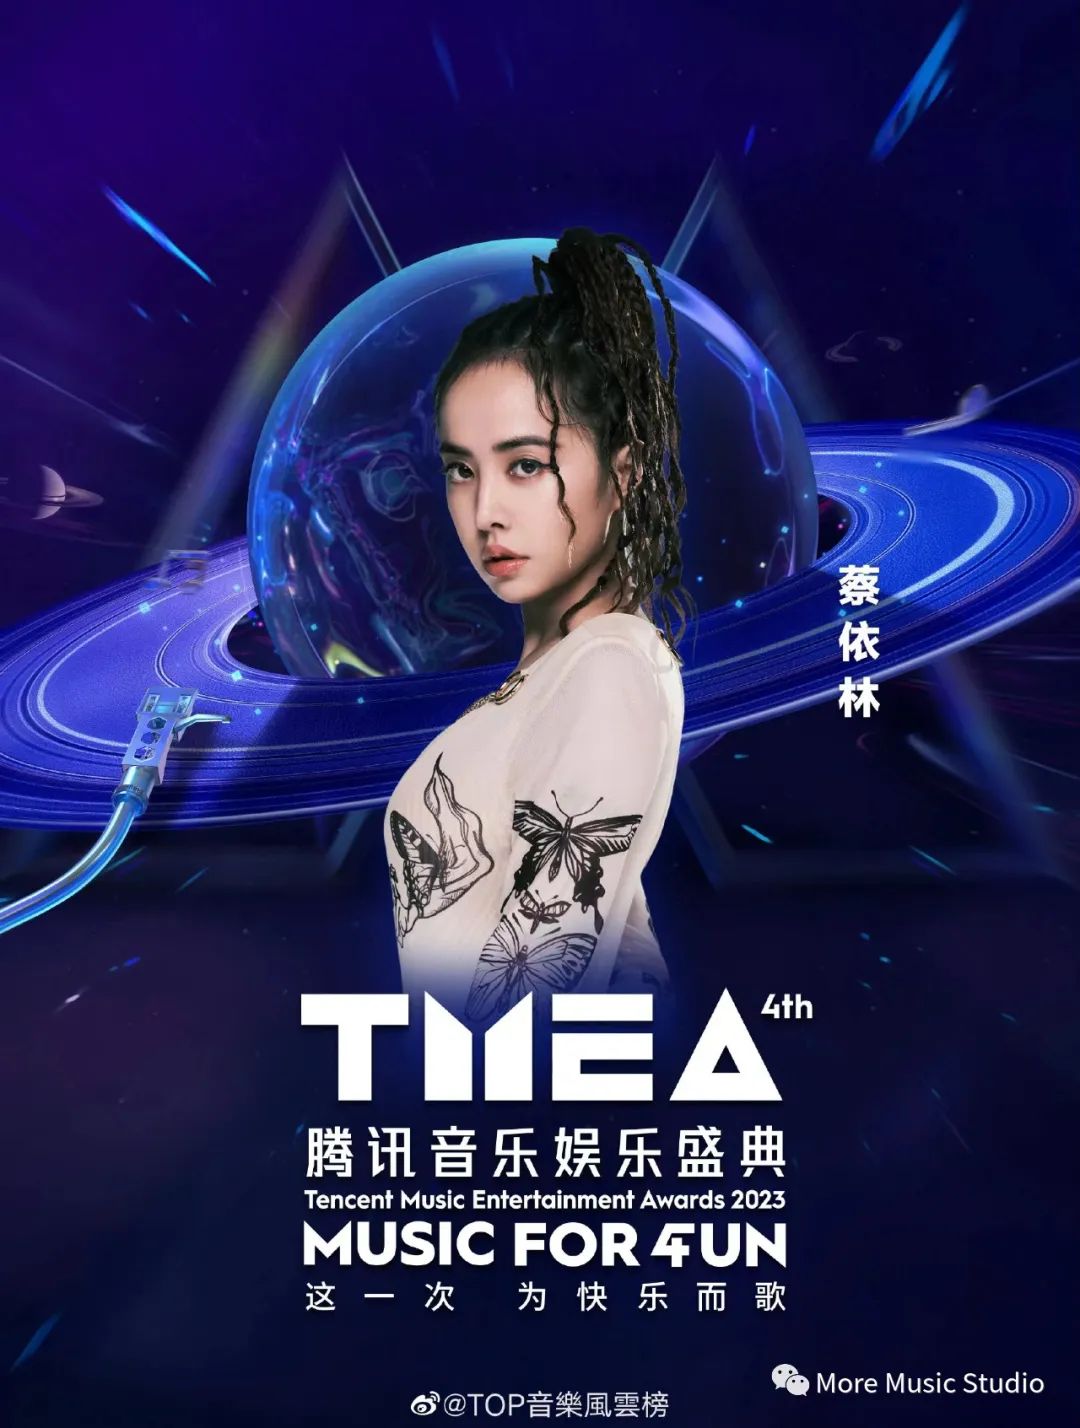 【TMEA官宣阵容】2023 腾讯音乐娱乐TMEA音乐节  嘉宾阵容官宣  林俊杰蔡依林…